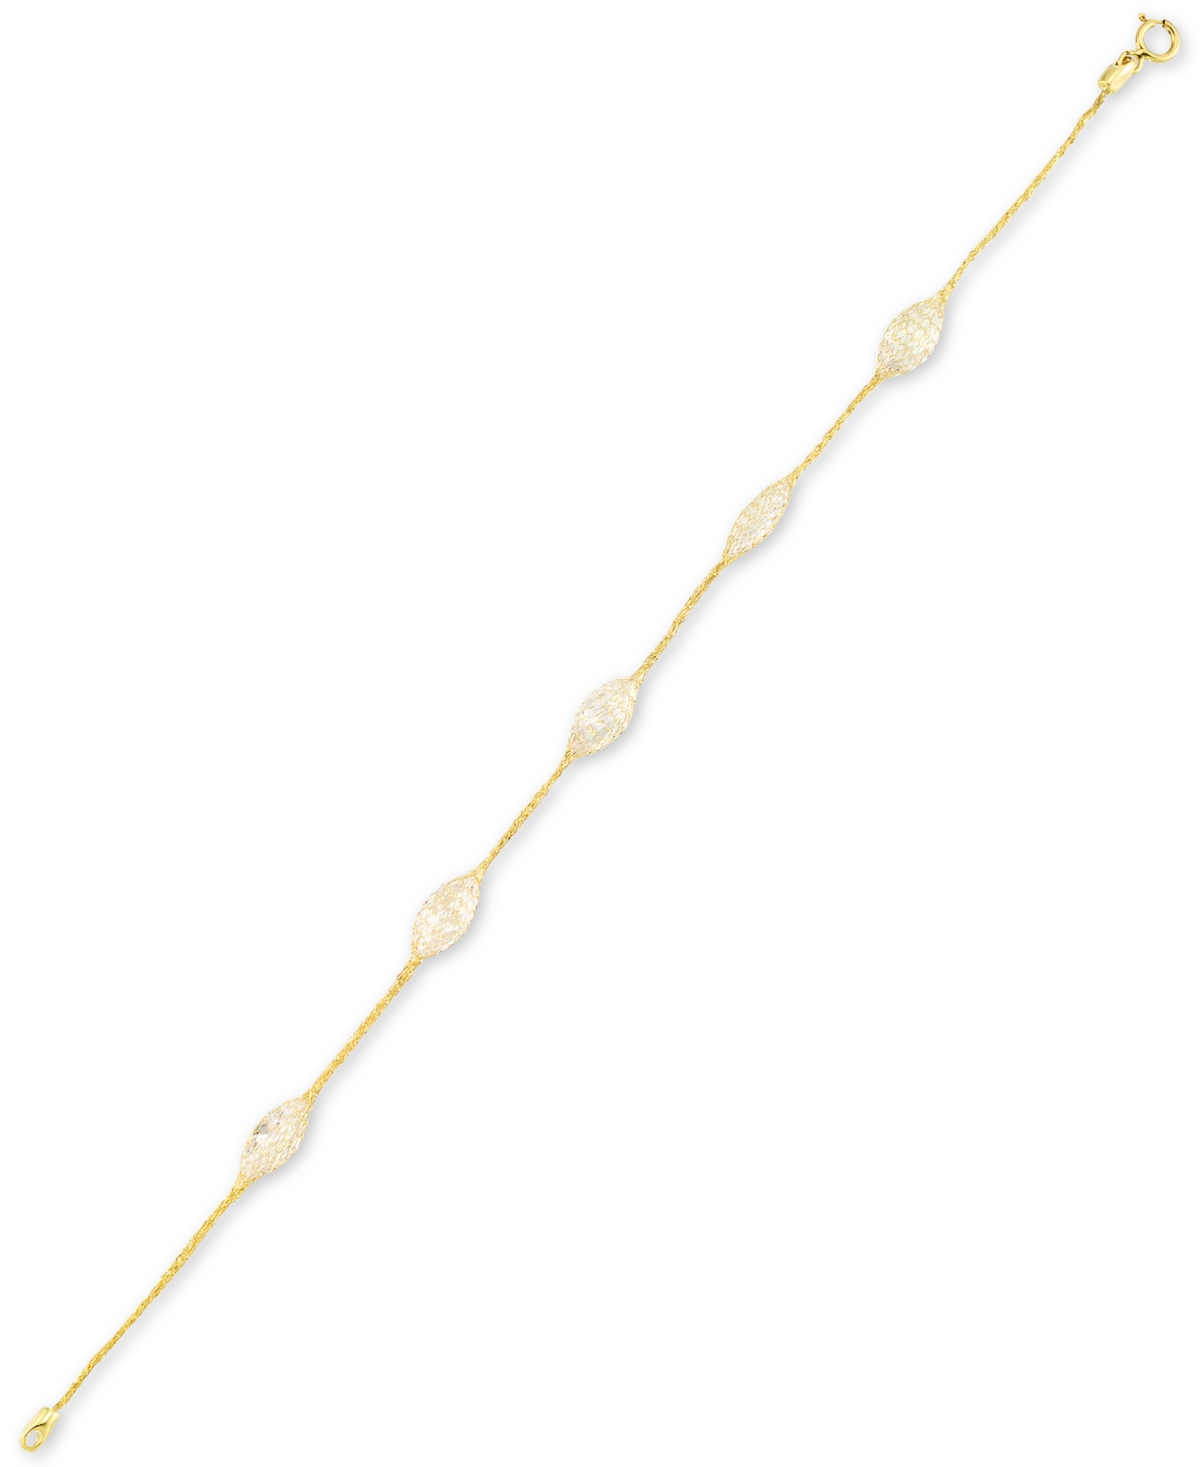 Cubic Zirconia Mesh Link Bracelet in 14k Gold - Yellow Gold